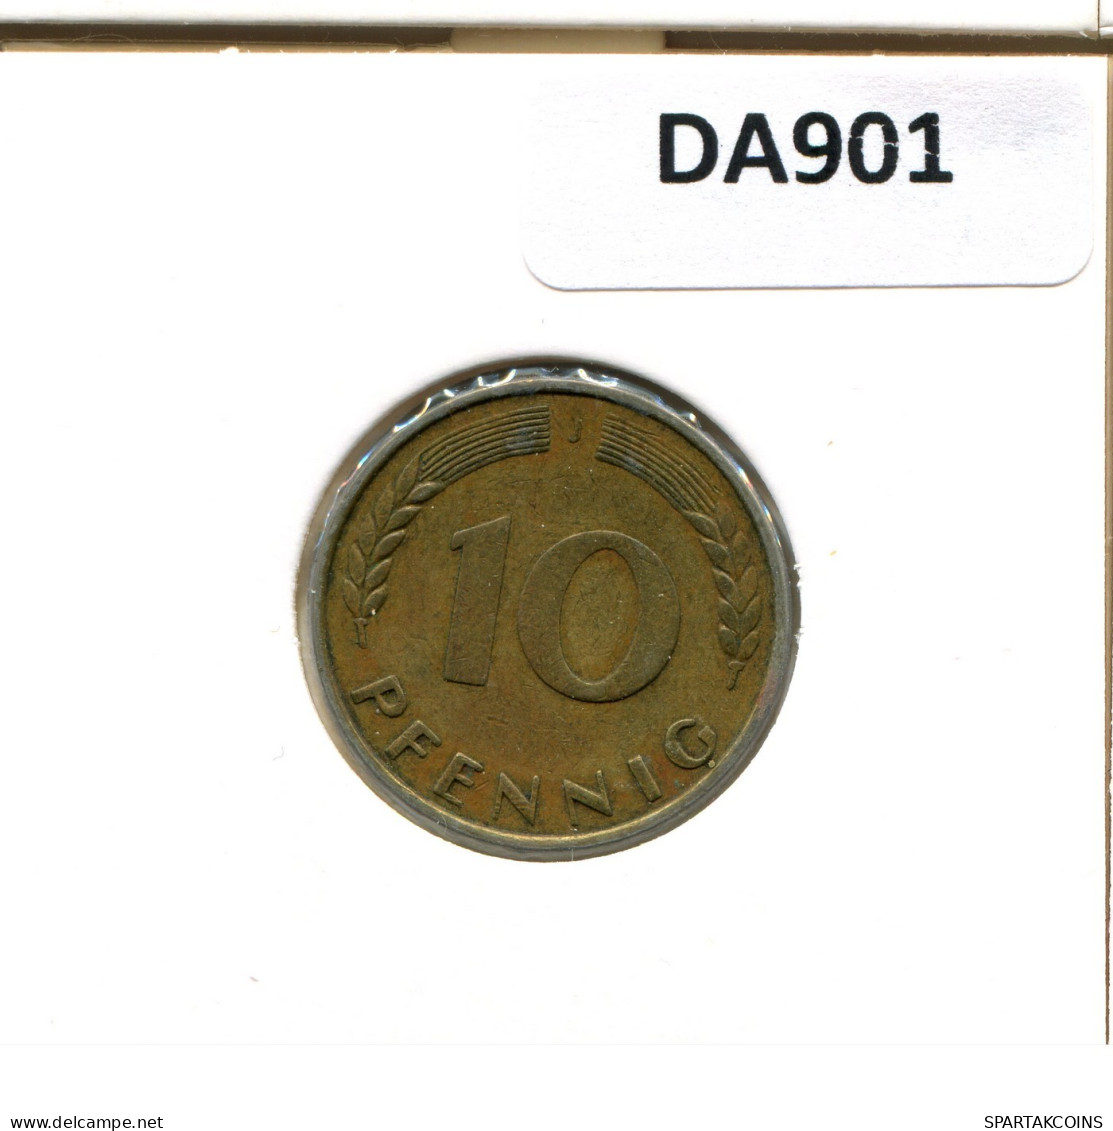 10 PFENNIG 1969 J BRD ALEMANIA Moneda GERMANY #DA901.E.A - 10 Pfennig